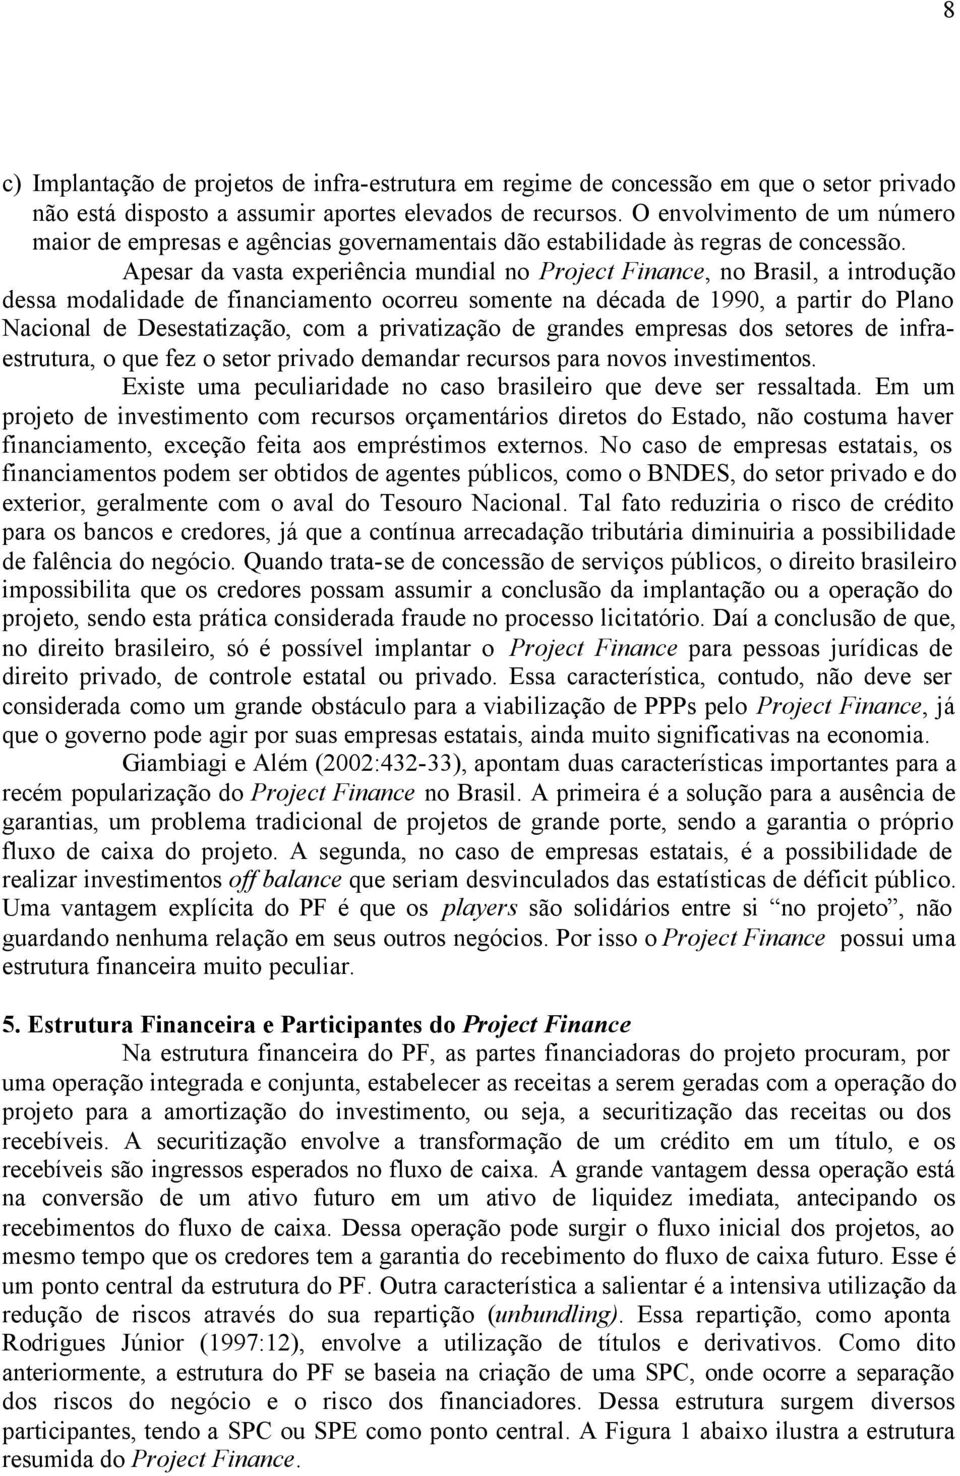 Apesar da vasta experiência mundial no Project Finance, no Brasil, a introdução dessa modalidade de financiamento ocorreu somente na década de 1990, a partir do Plano Nacional de Desestatização, com